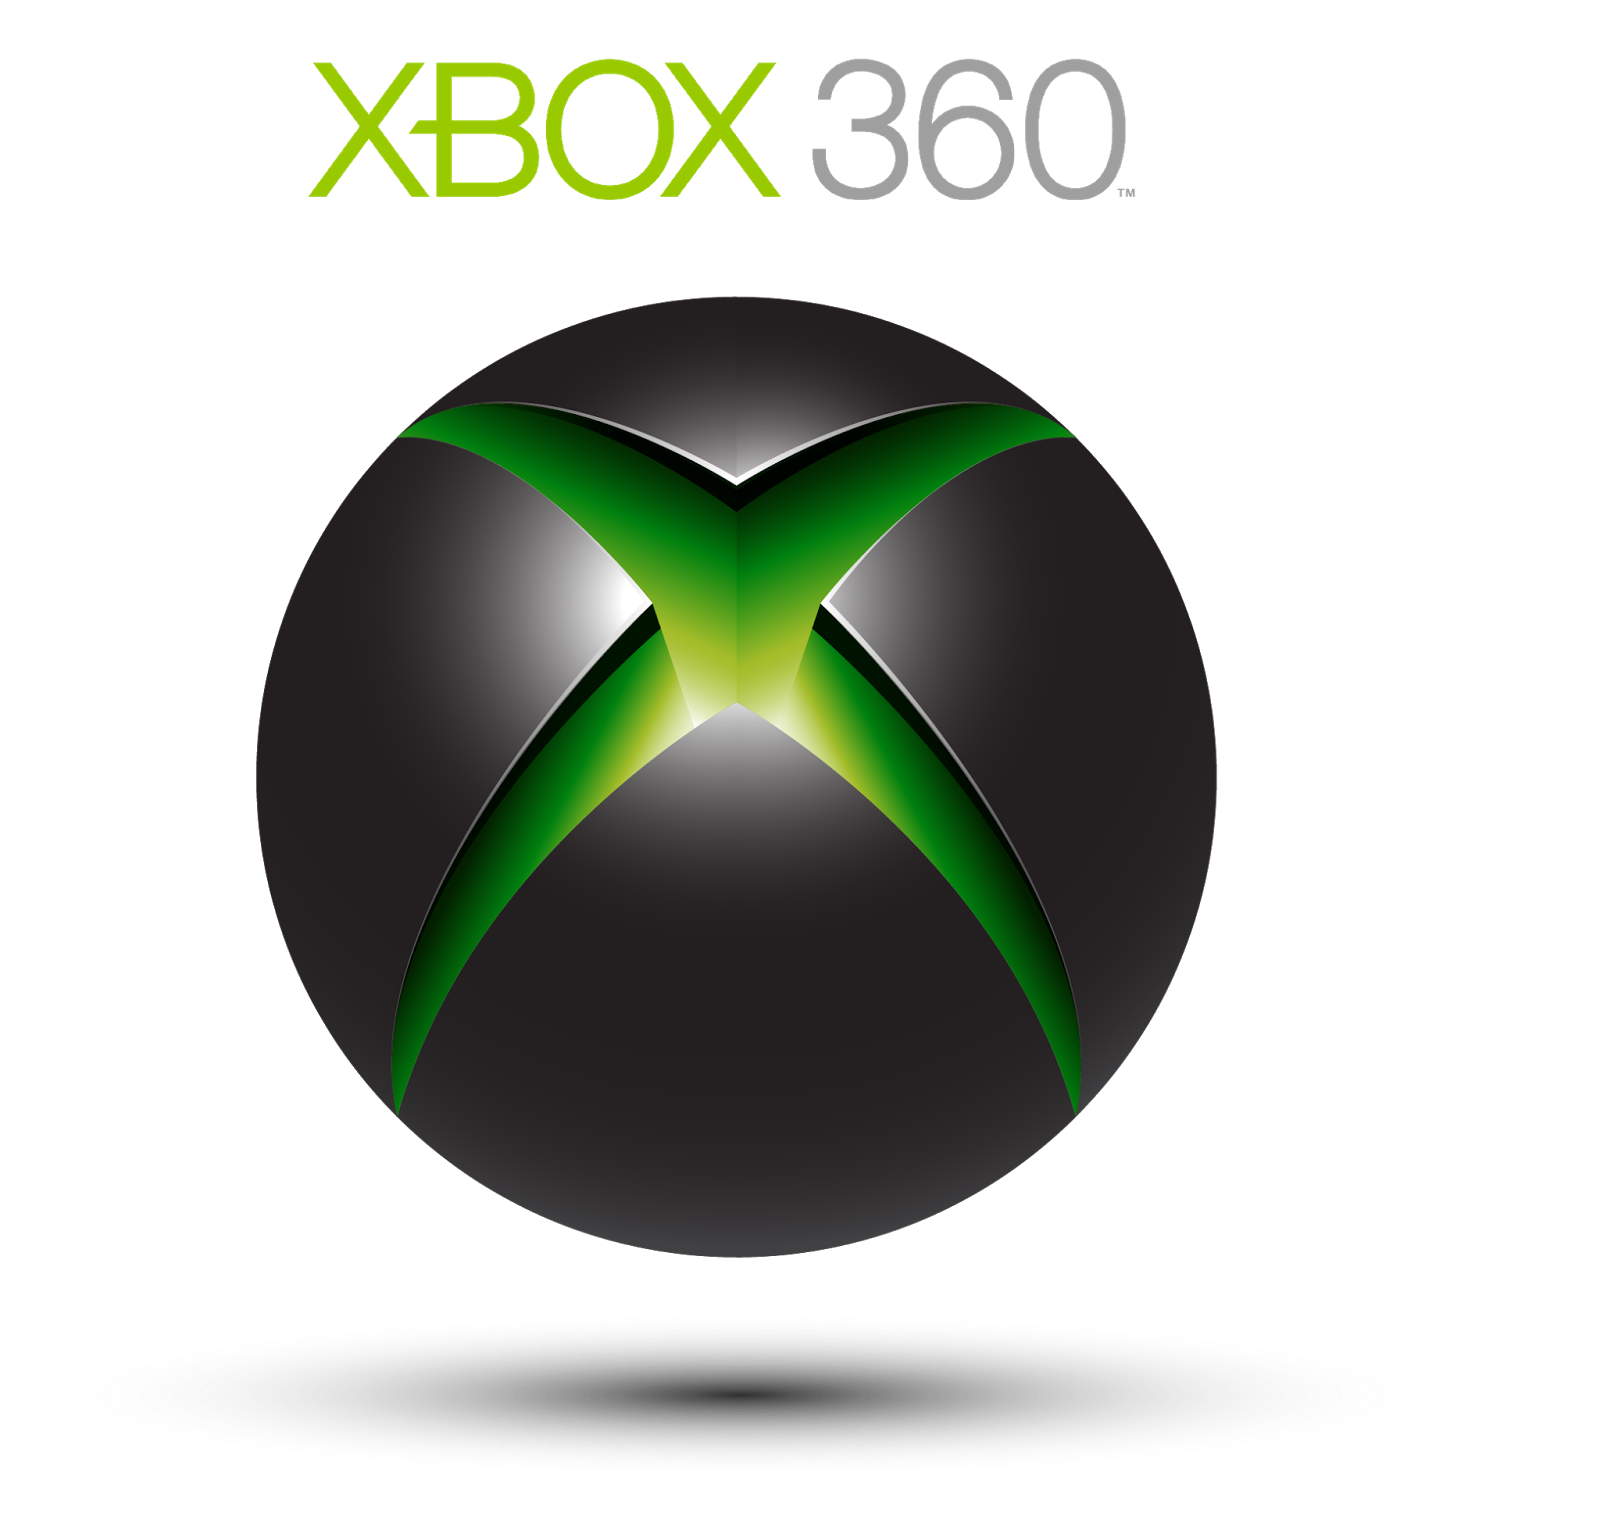 Xbox company. Xbox 360. Xbox 360 лого. Microsoft Xbox 360 logo. Икс бокс 360 значок.